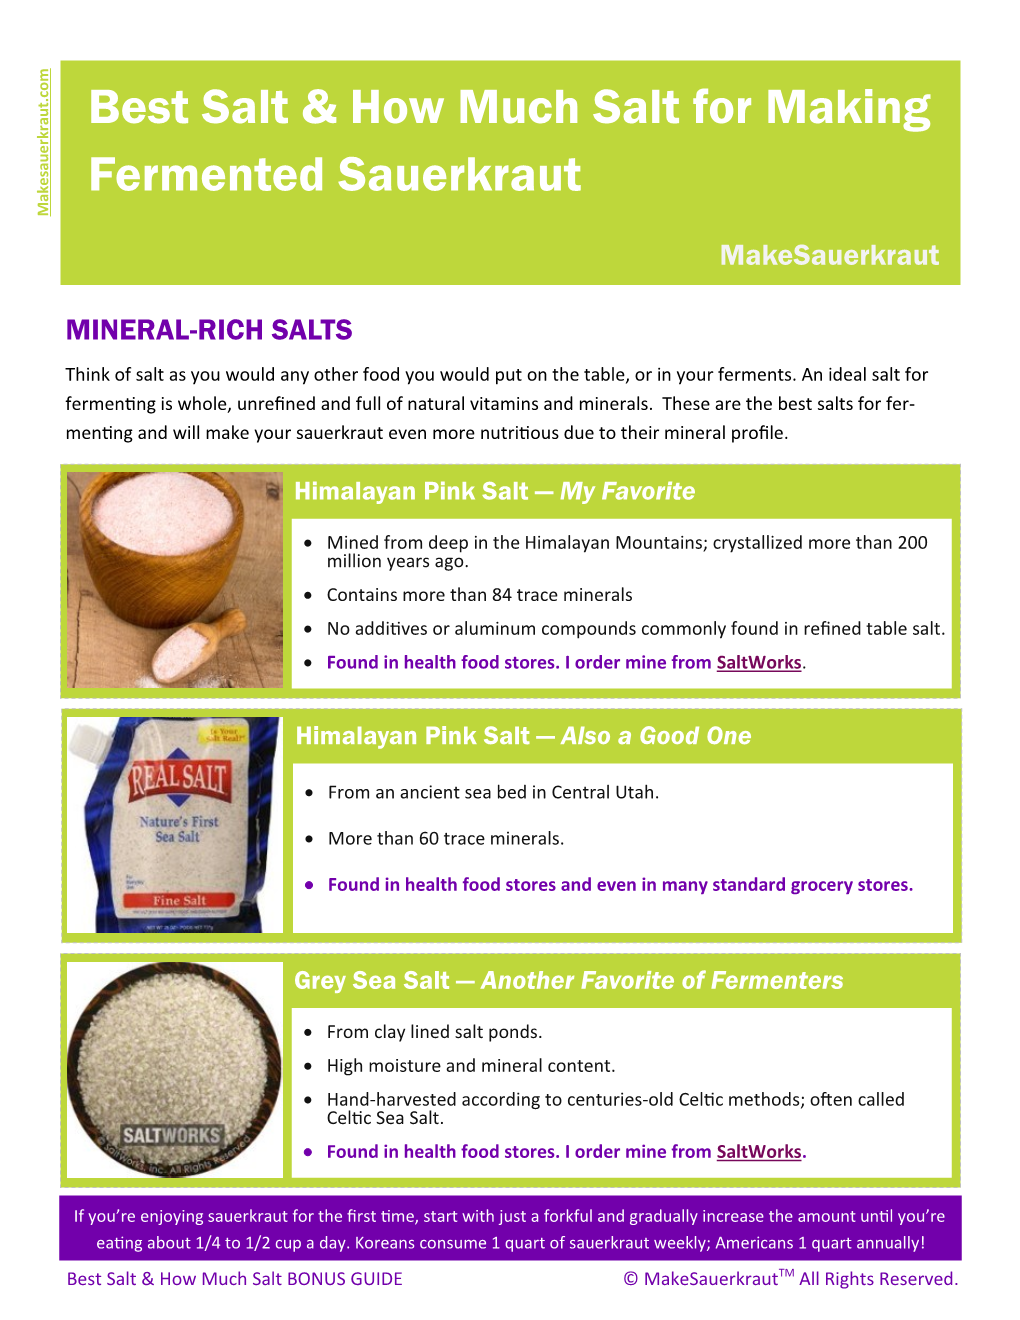 Best Salt & How Much Salt for Making Fermented Sauerkraut